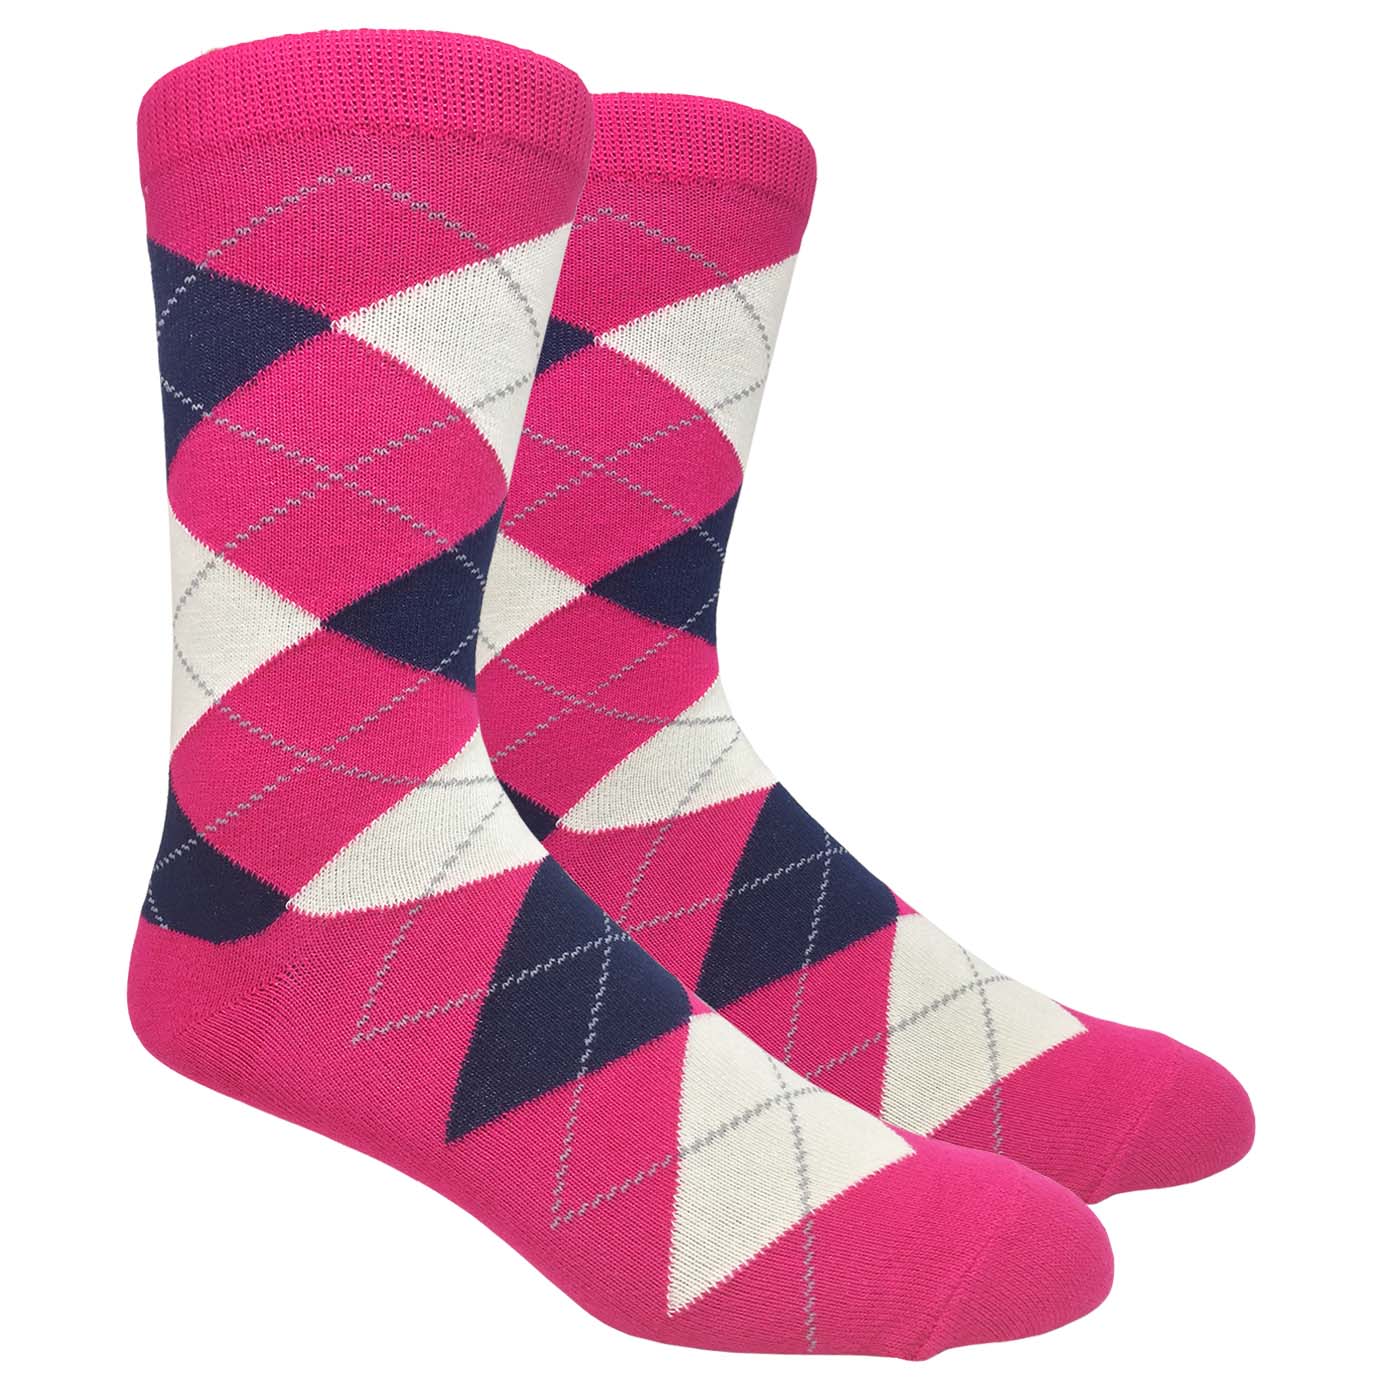 FineFit Black Label Argyle Socks - Hot Pink